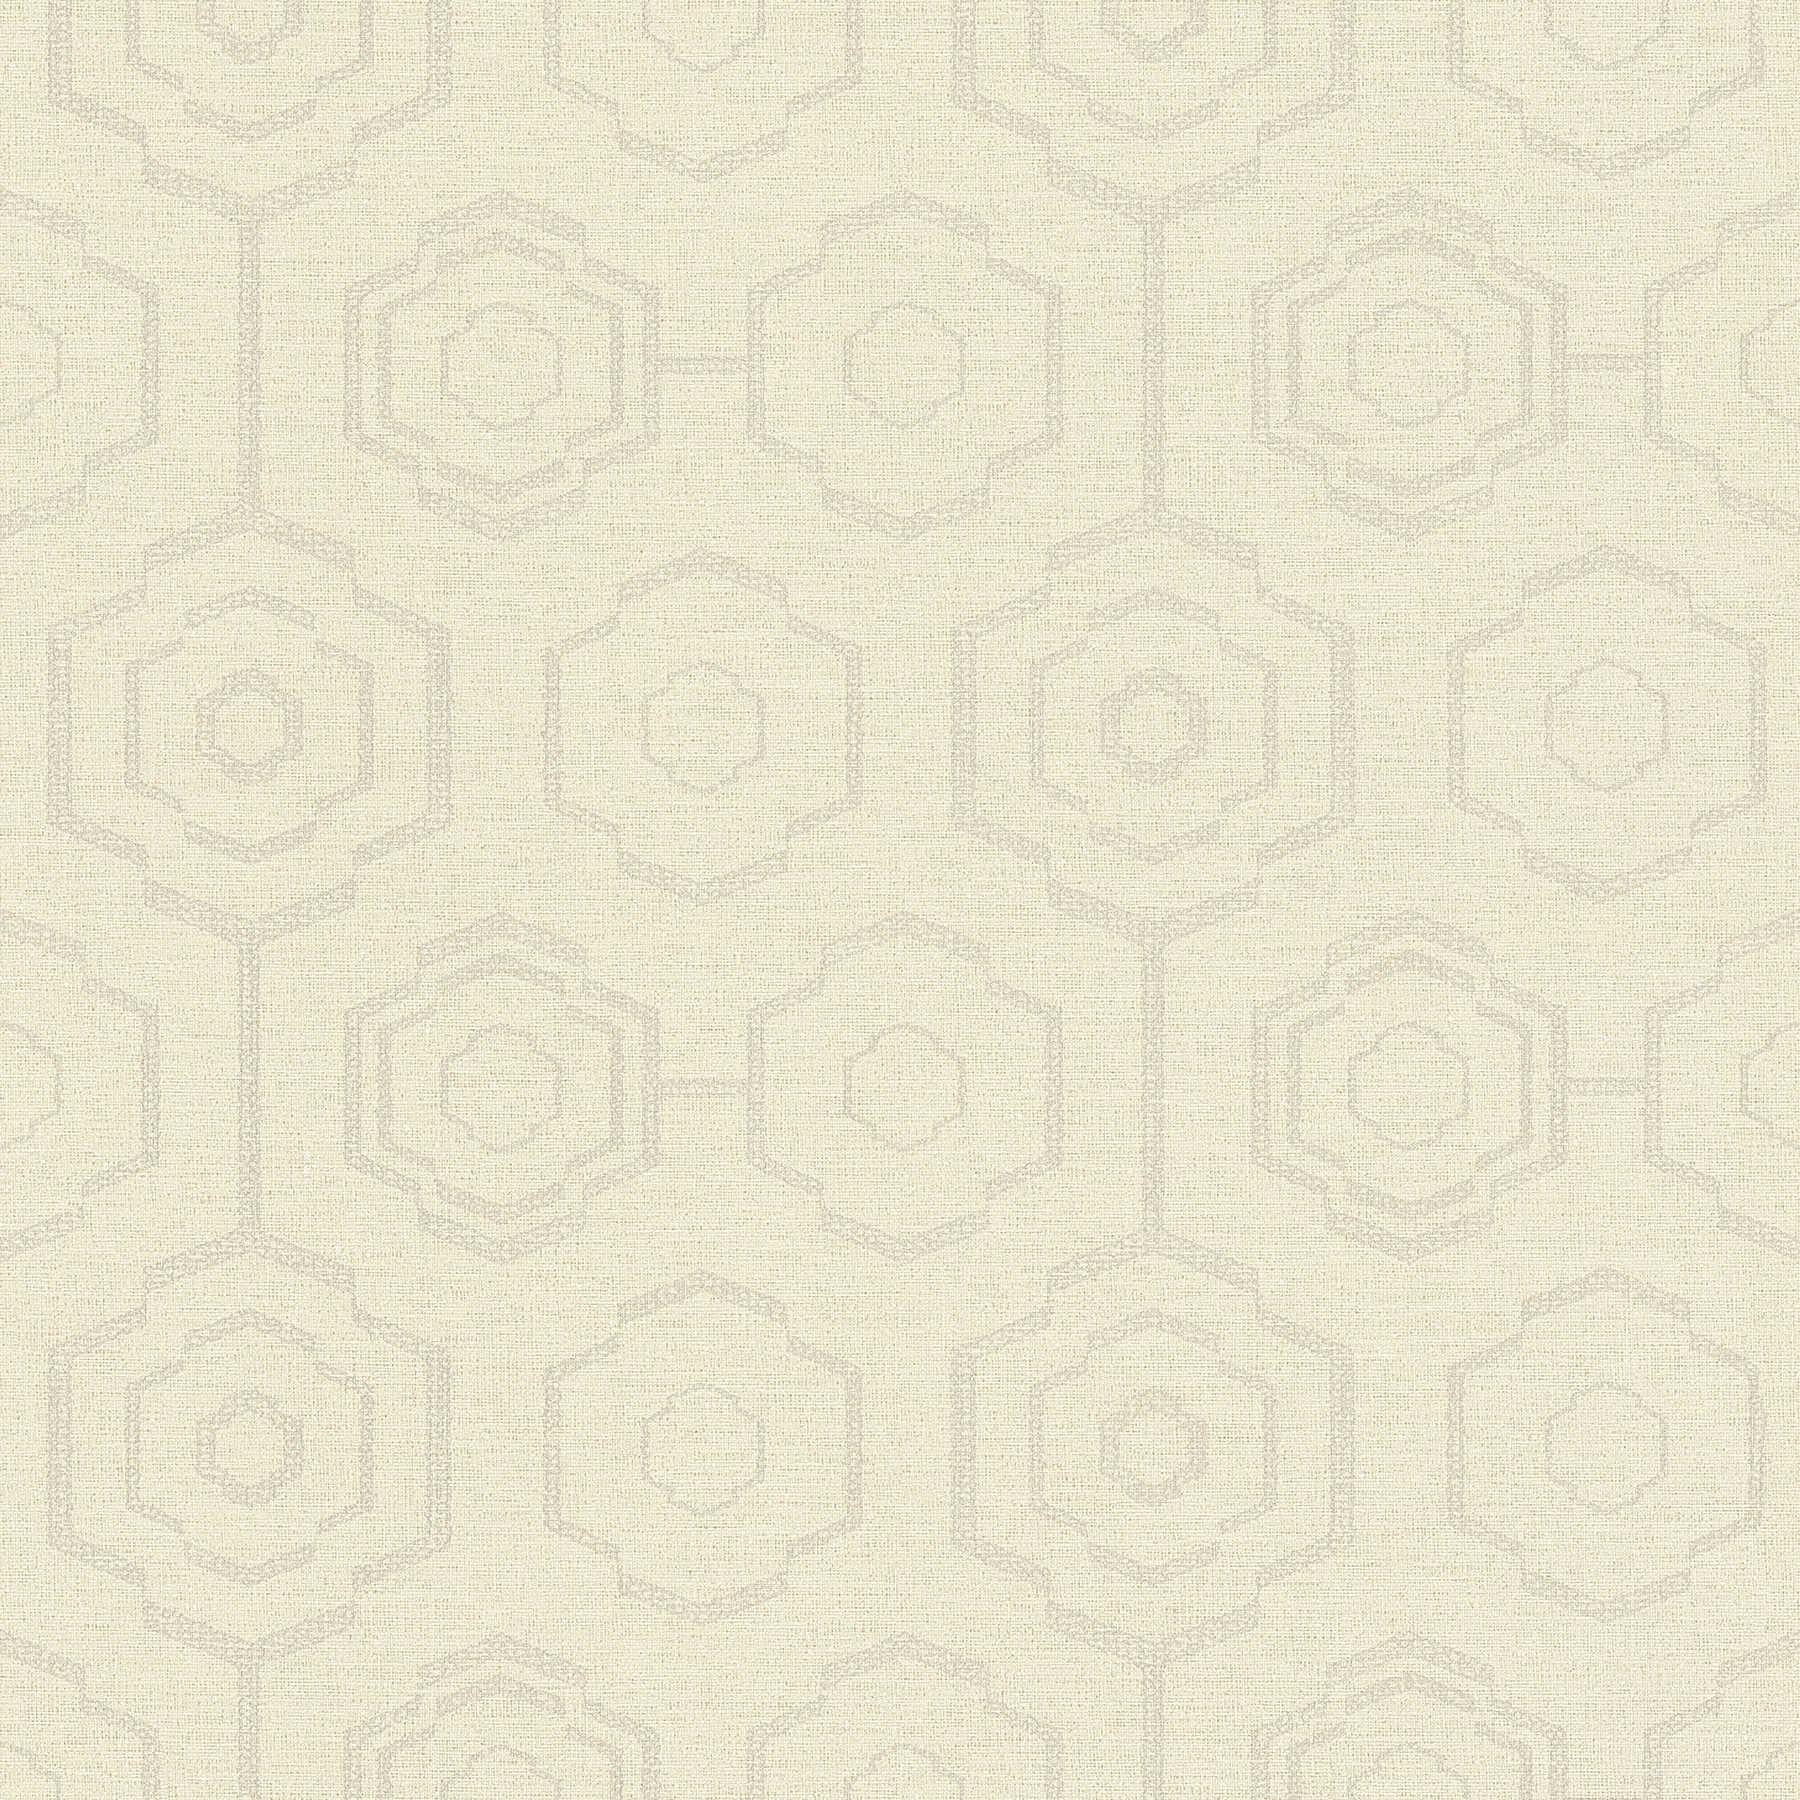 papier peint aspect textile design géométrique & effet brillant - crème, gris, beige
